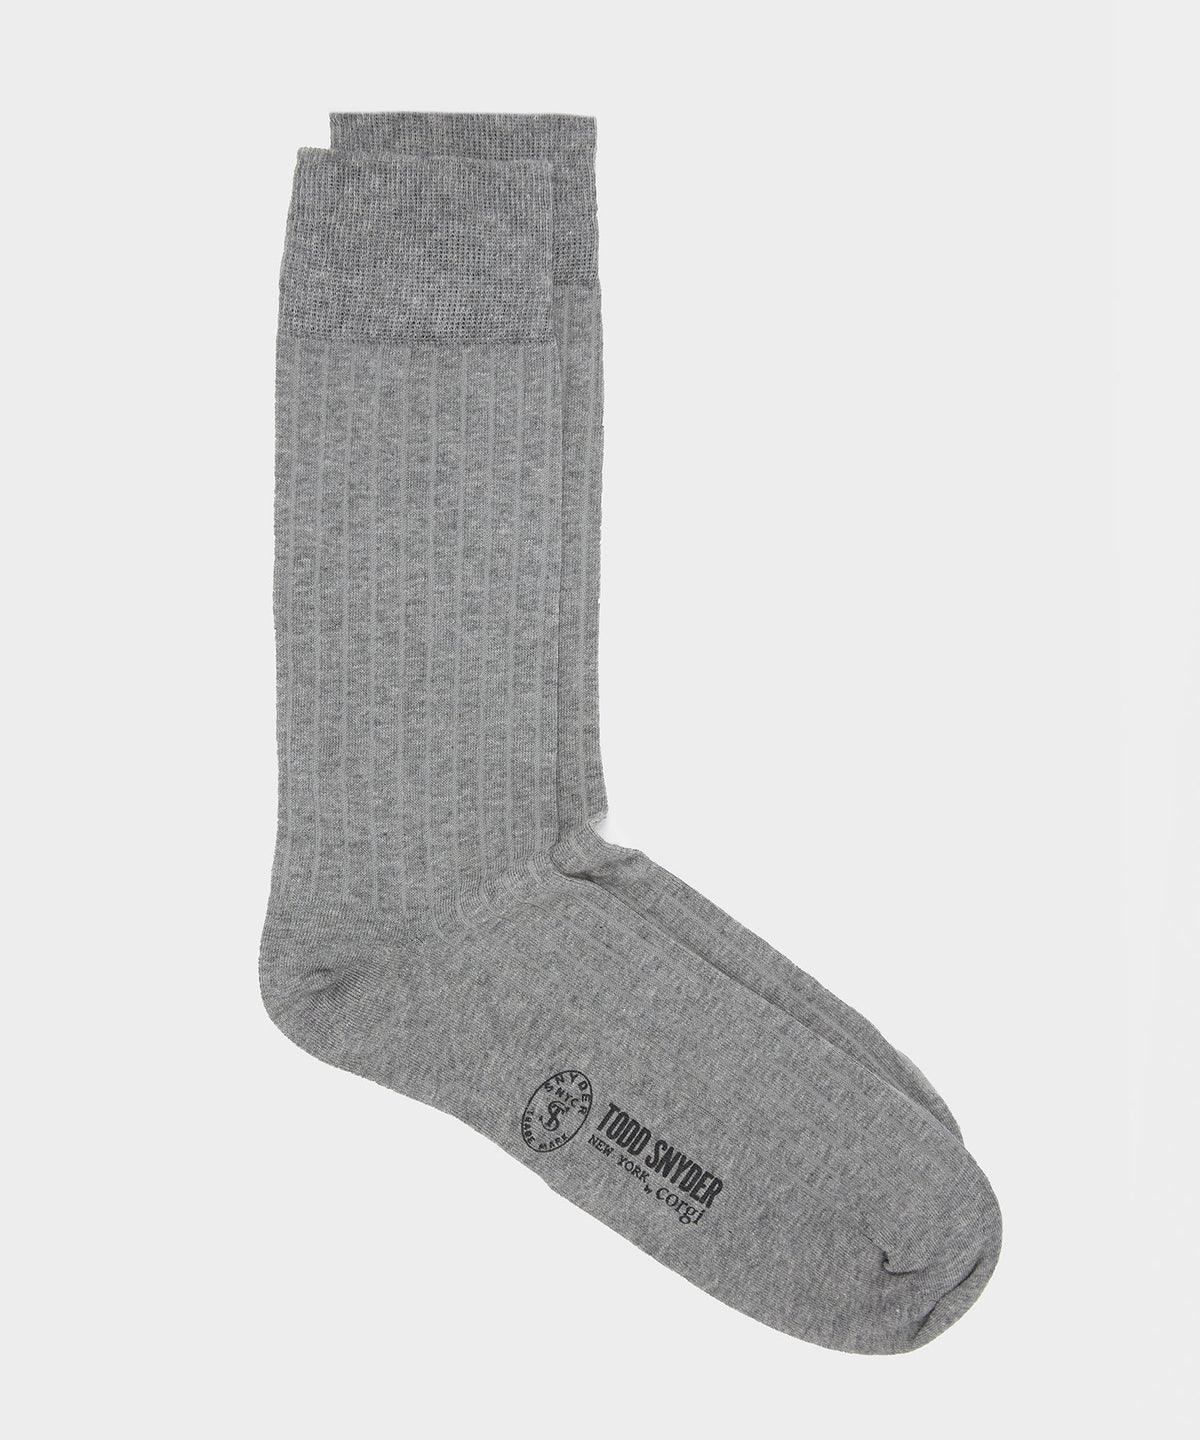 Todd Snyder x Corgi Sock in Grey